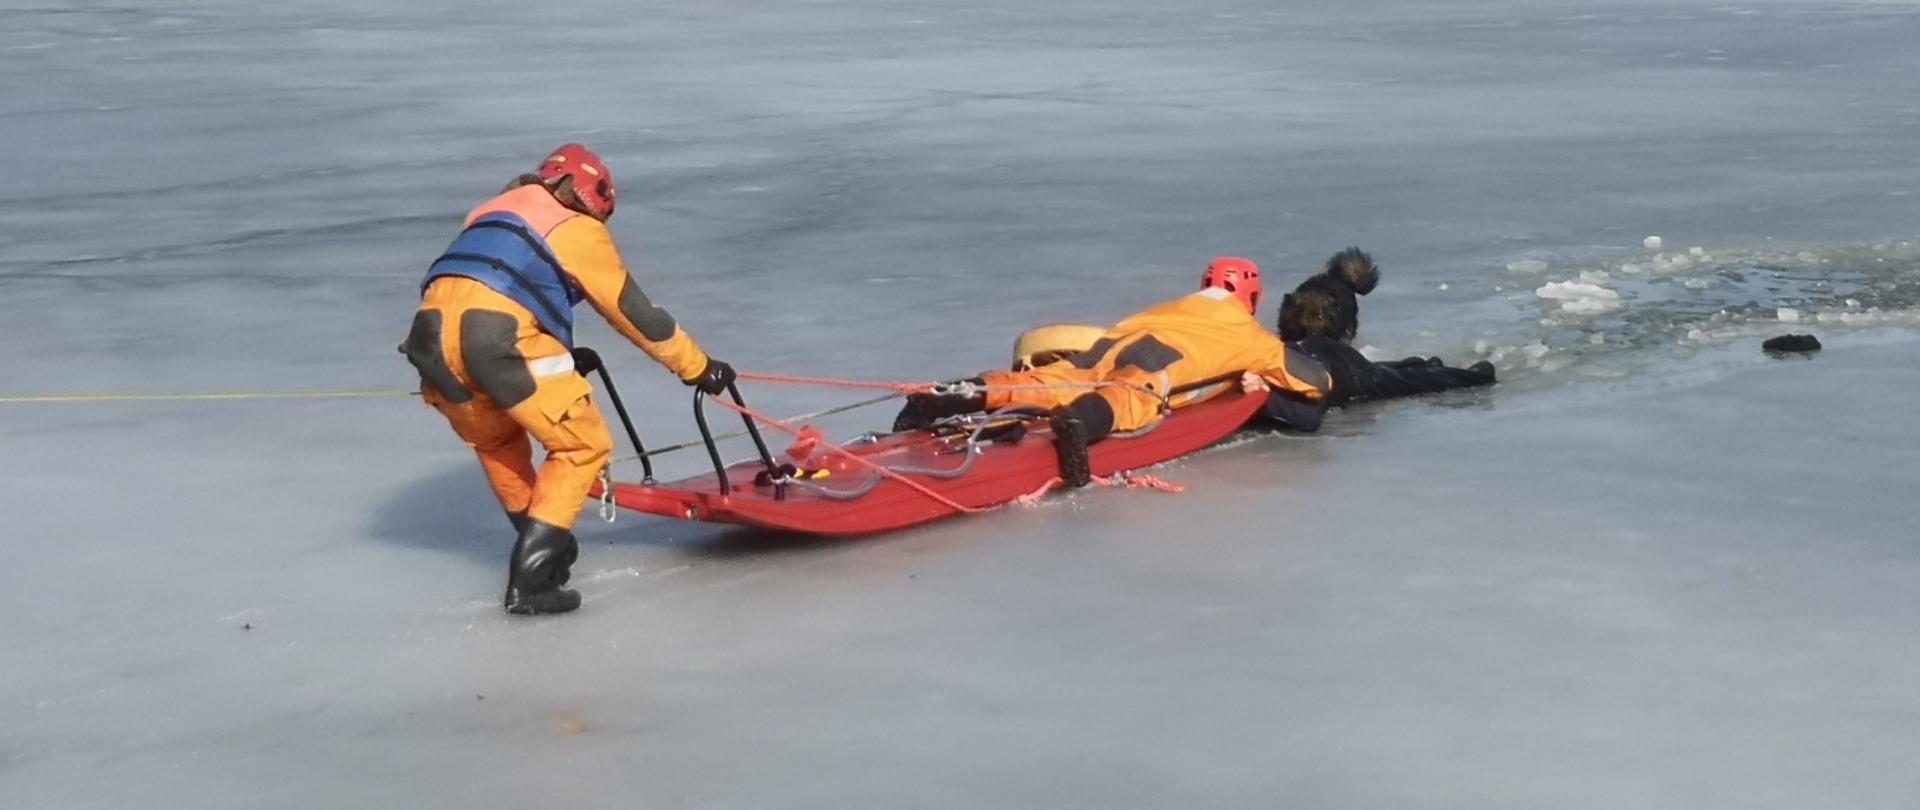 Zdjęcie przedstawia dwóch ratowników PSP z saniami wodno-lodowymi w trakcie ewakuacji mężczyzny z wody.